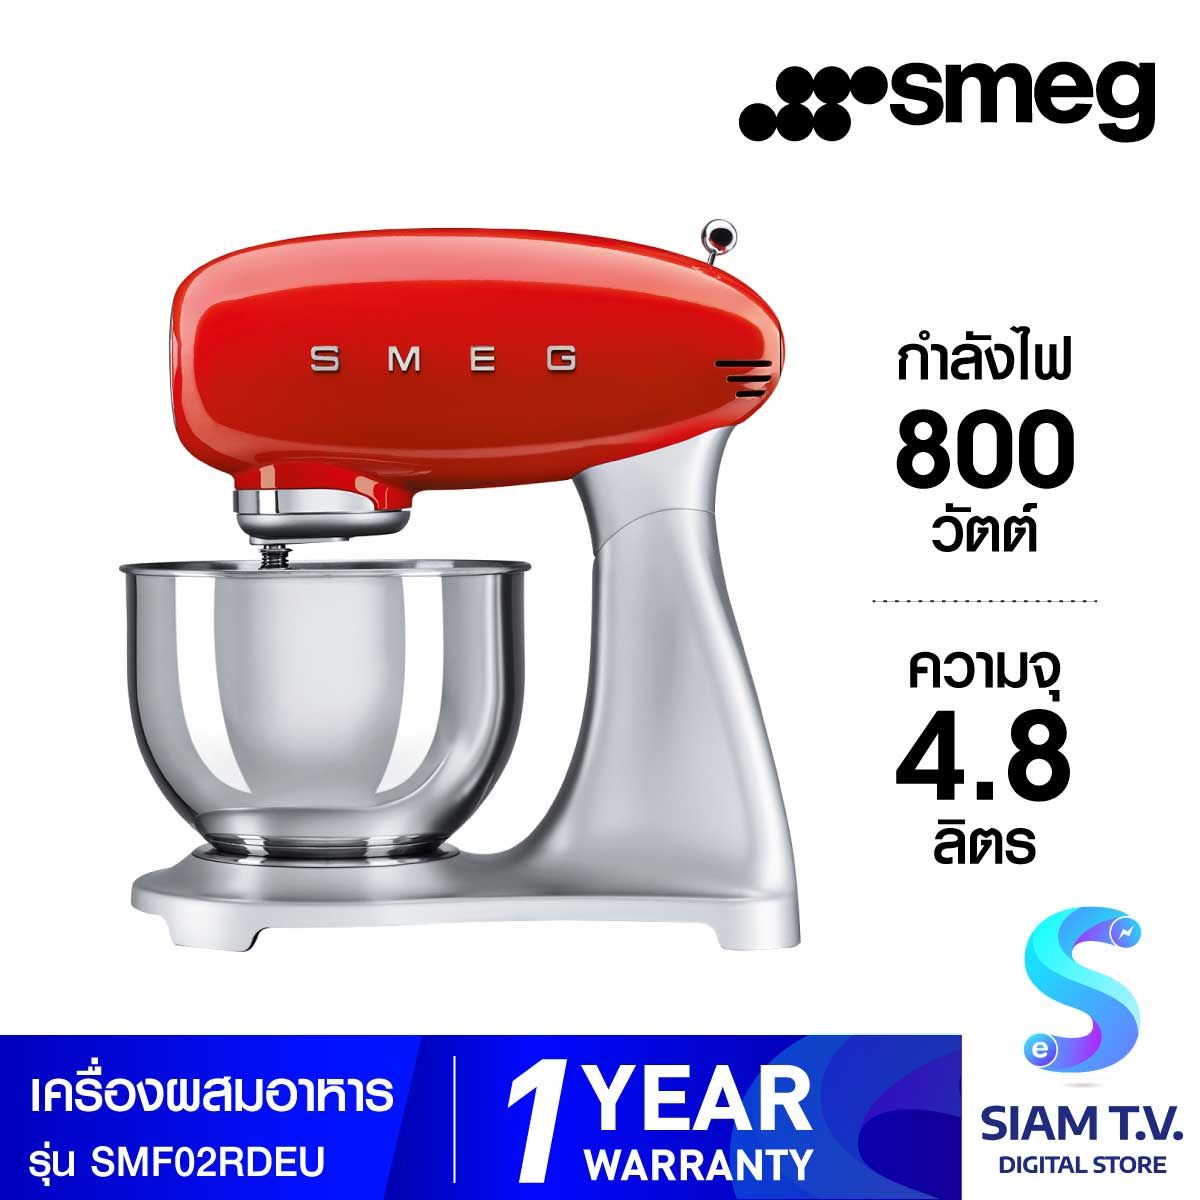 SMEG เครื่องผสมอาหารดีไซน์ยุค 50 รุ่นSMF02RDEU สีแดง